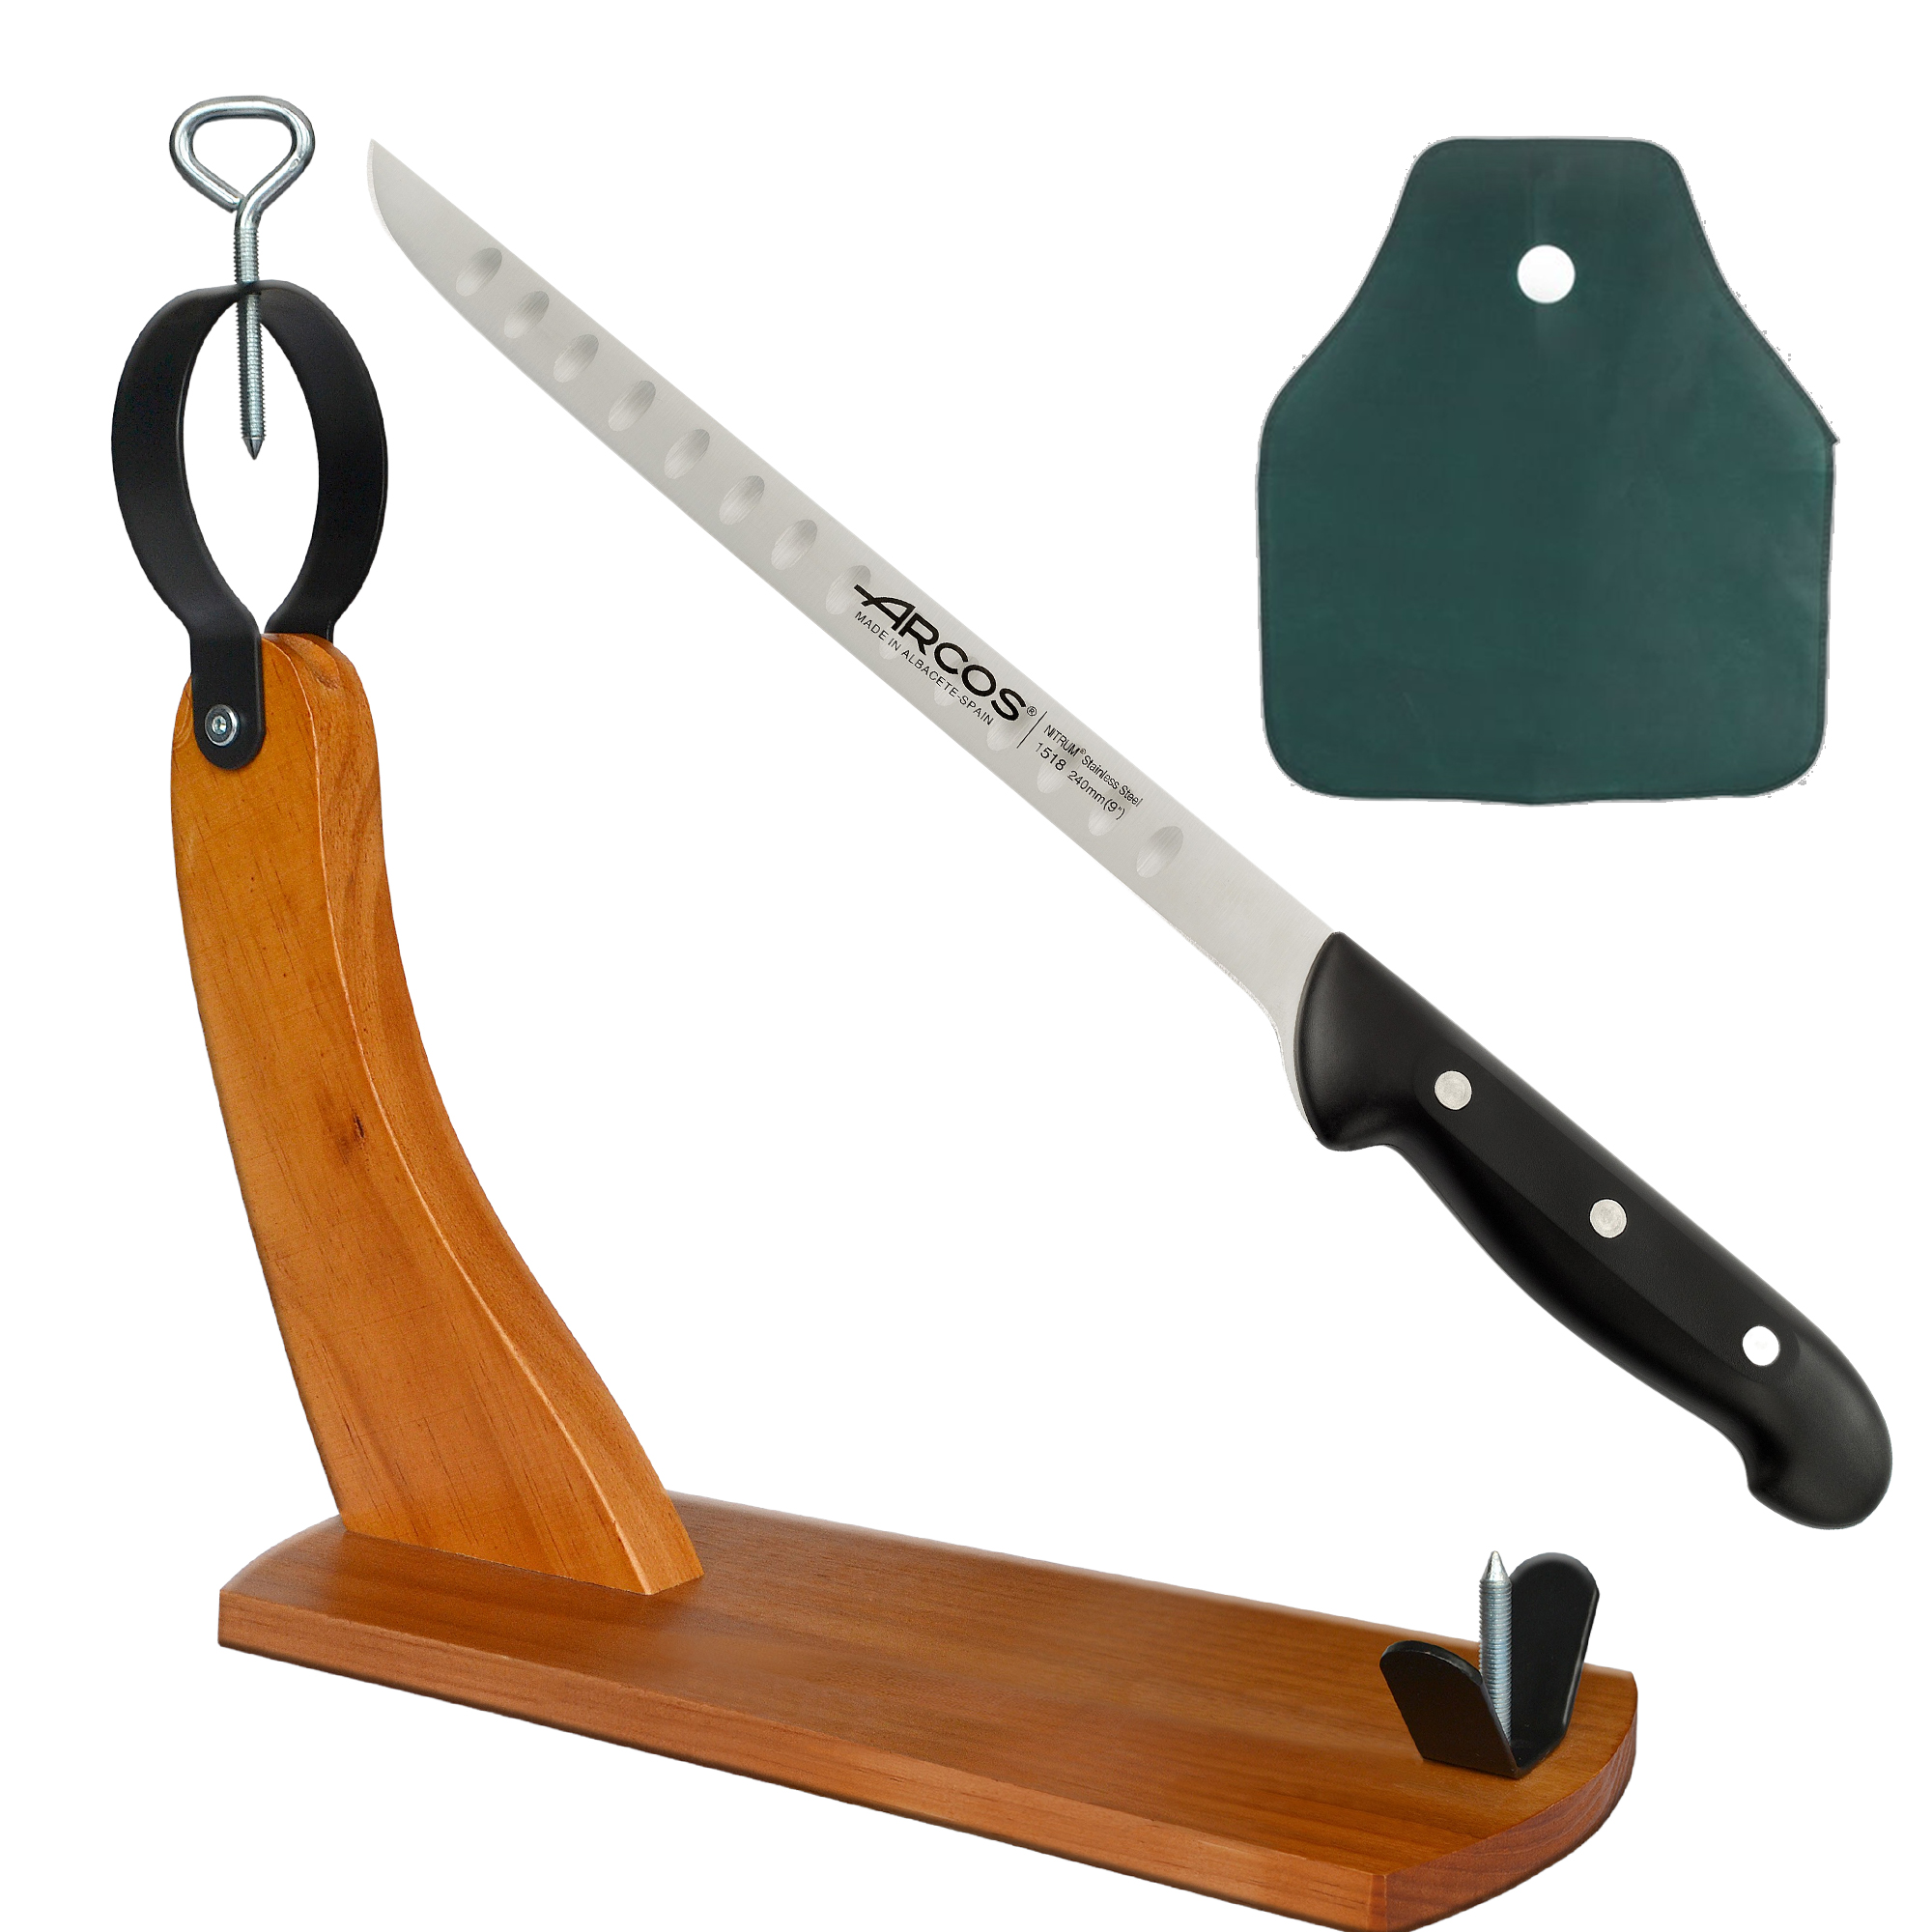 Cuchillos jamoneros, utensilios para cortar jamón ibérico, soportes y tablas